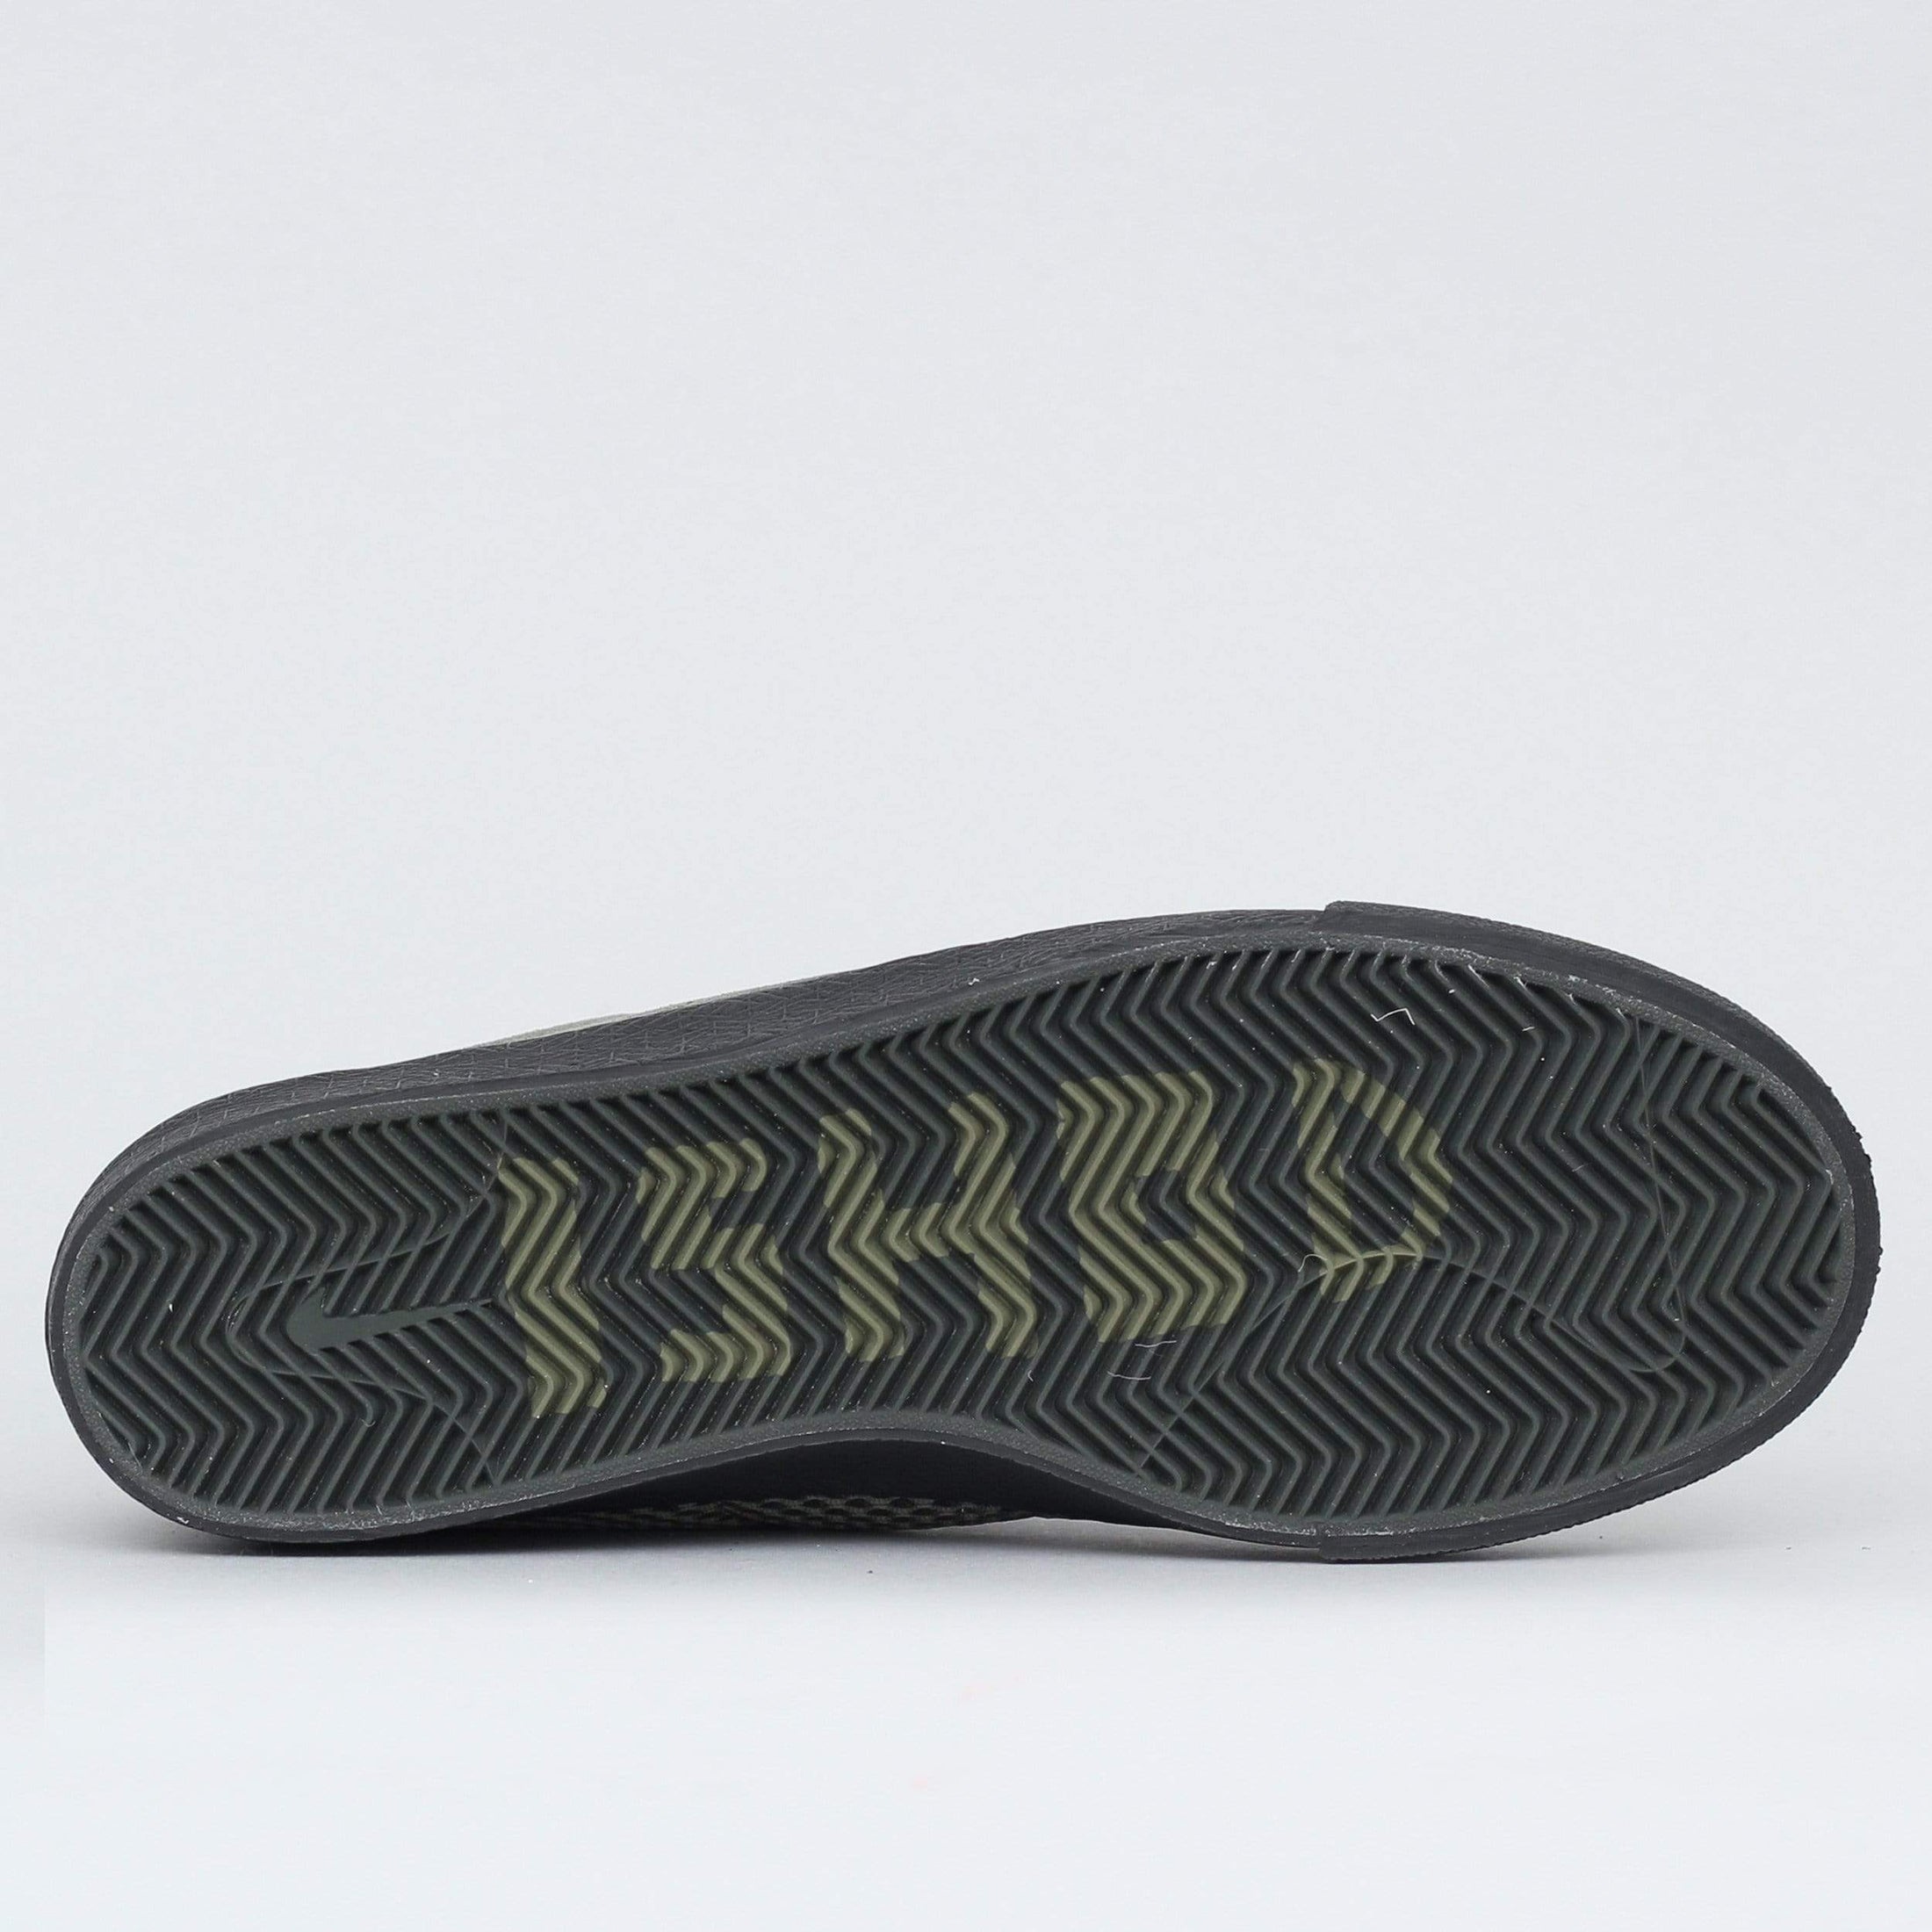 Nike SB Ishod Bruin ISO Orange Label Shoes Sequoia / Olive